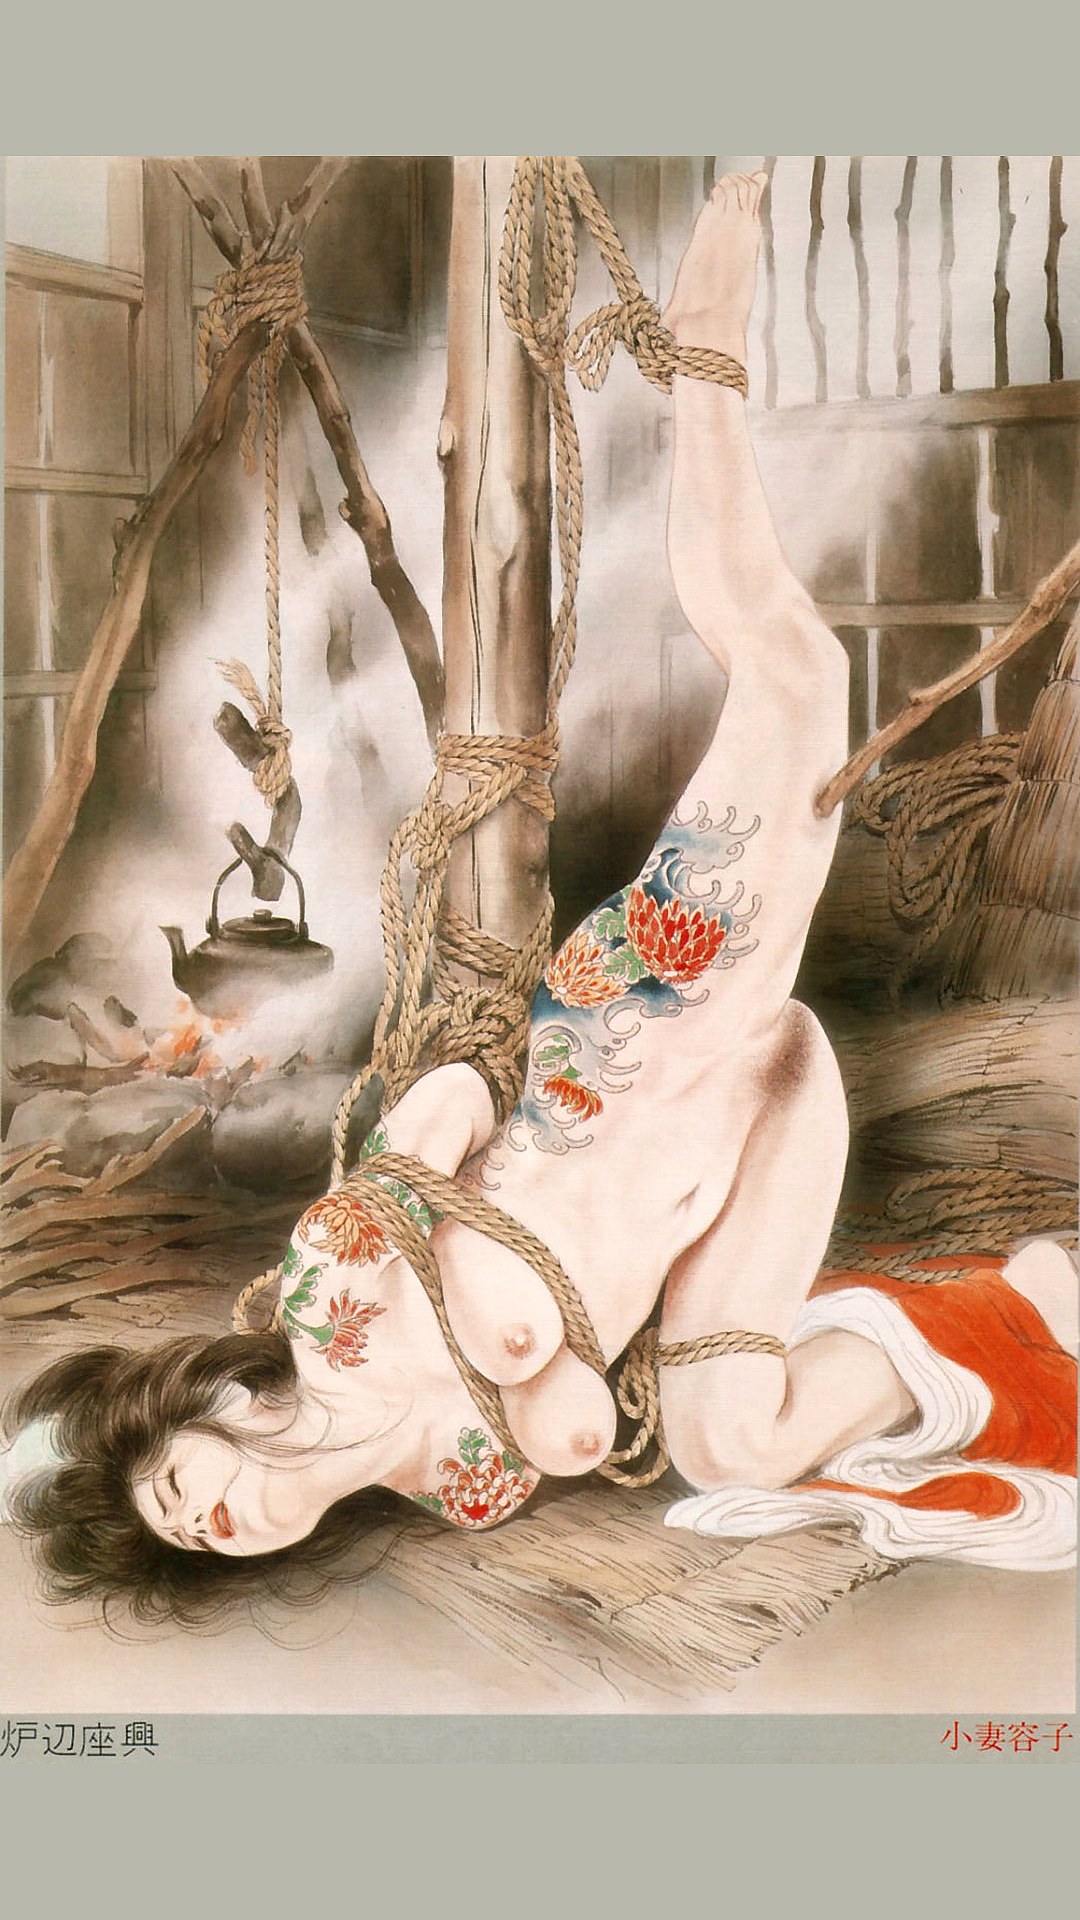 японская эротика рисованная фото 40